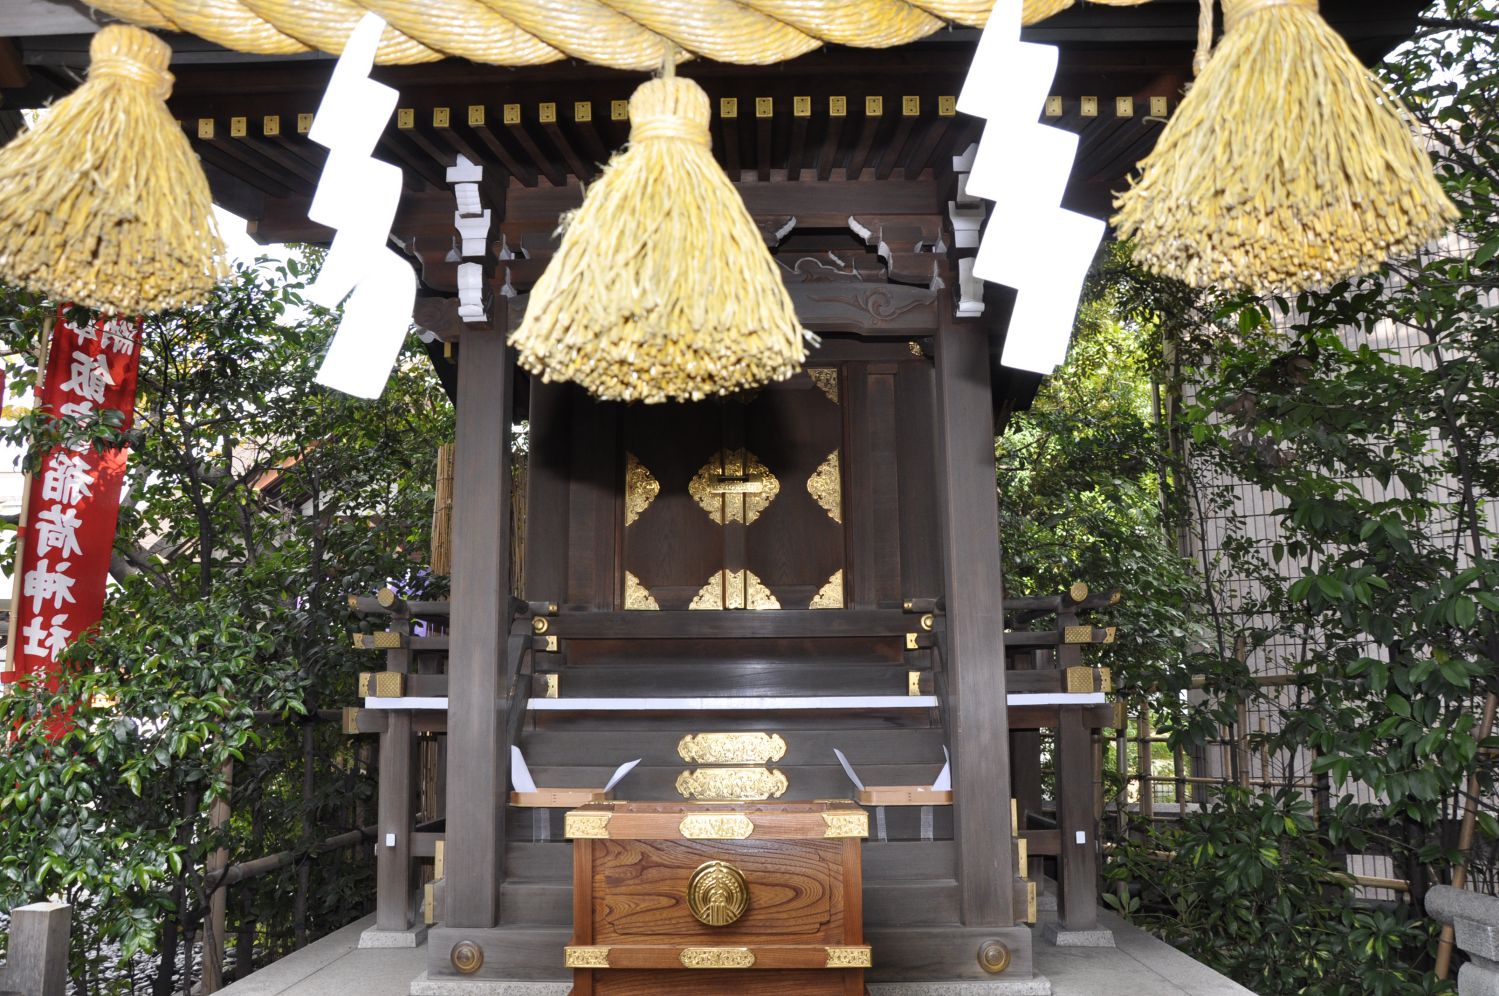  飯富稲荷神社 